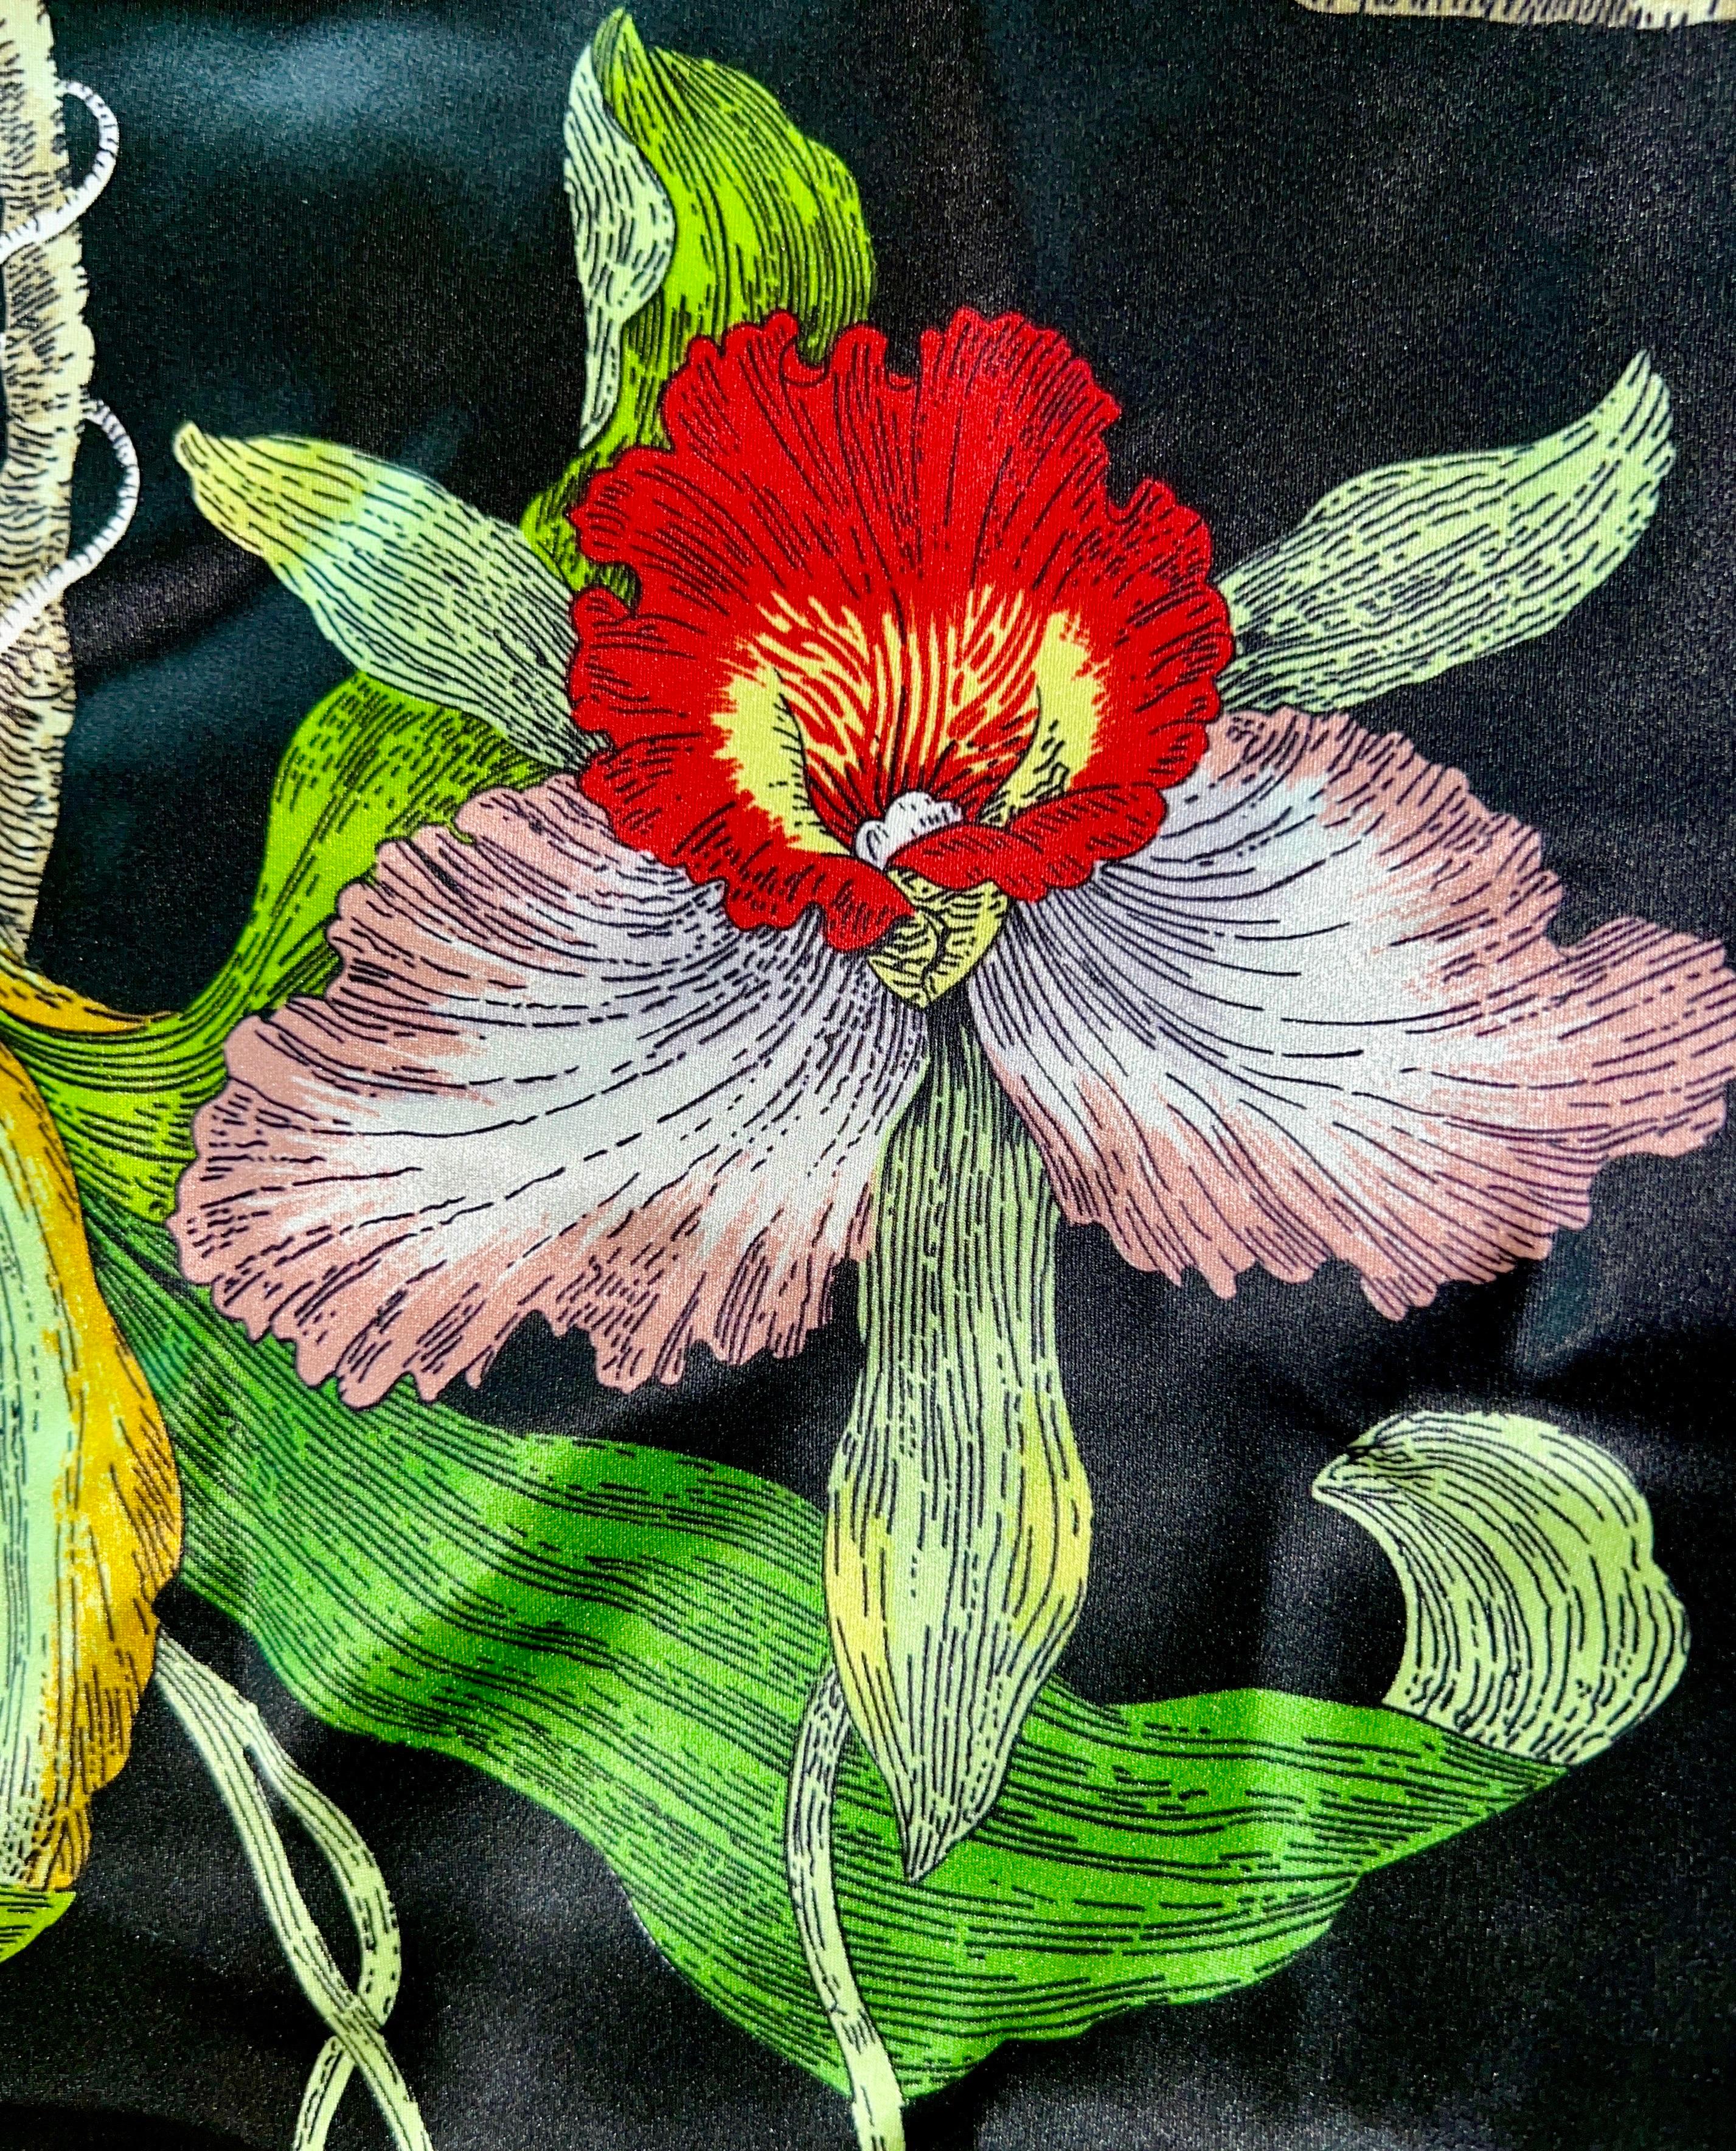 UNWORN Olivia von Halle Luxurious Silk Print Floral Maxi Dress M 2